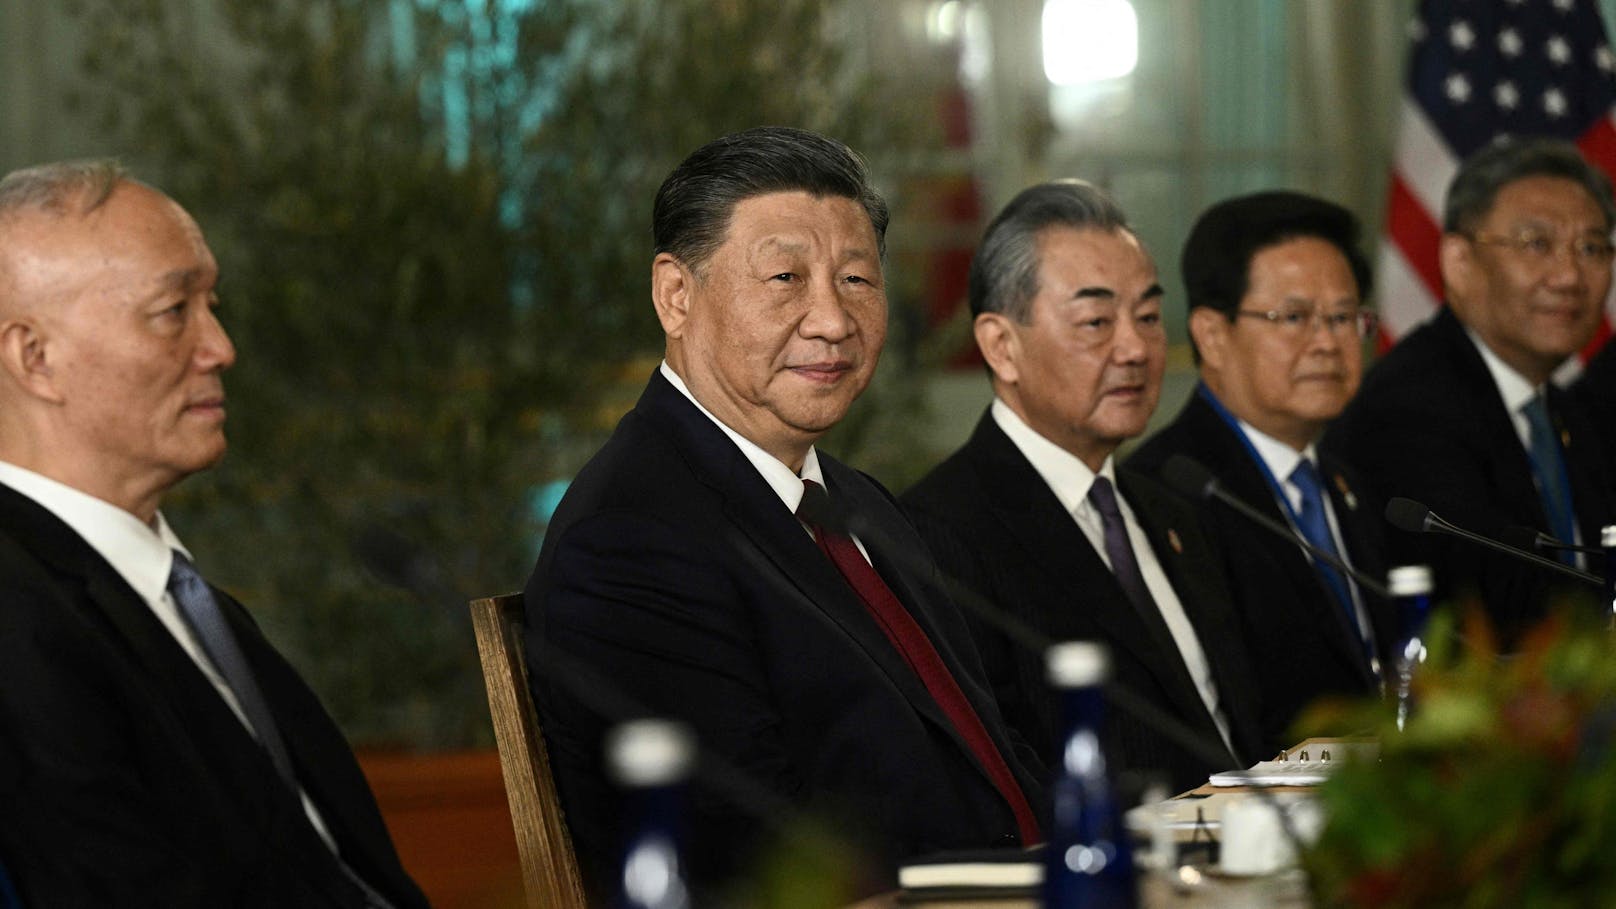 Biden machte deutlich, dass er und Xi künftig eher zum Telefonhörer greifen wollten, wenn sich eine Krise entwickele.